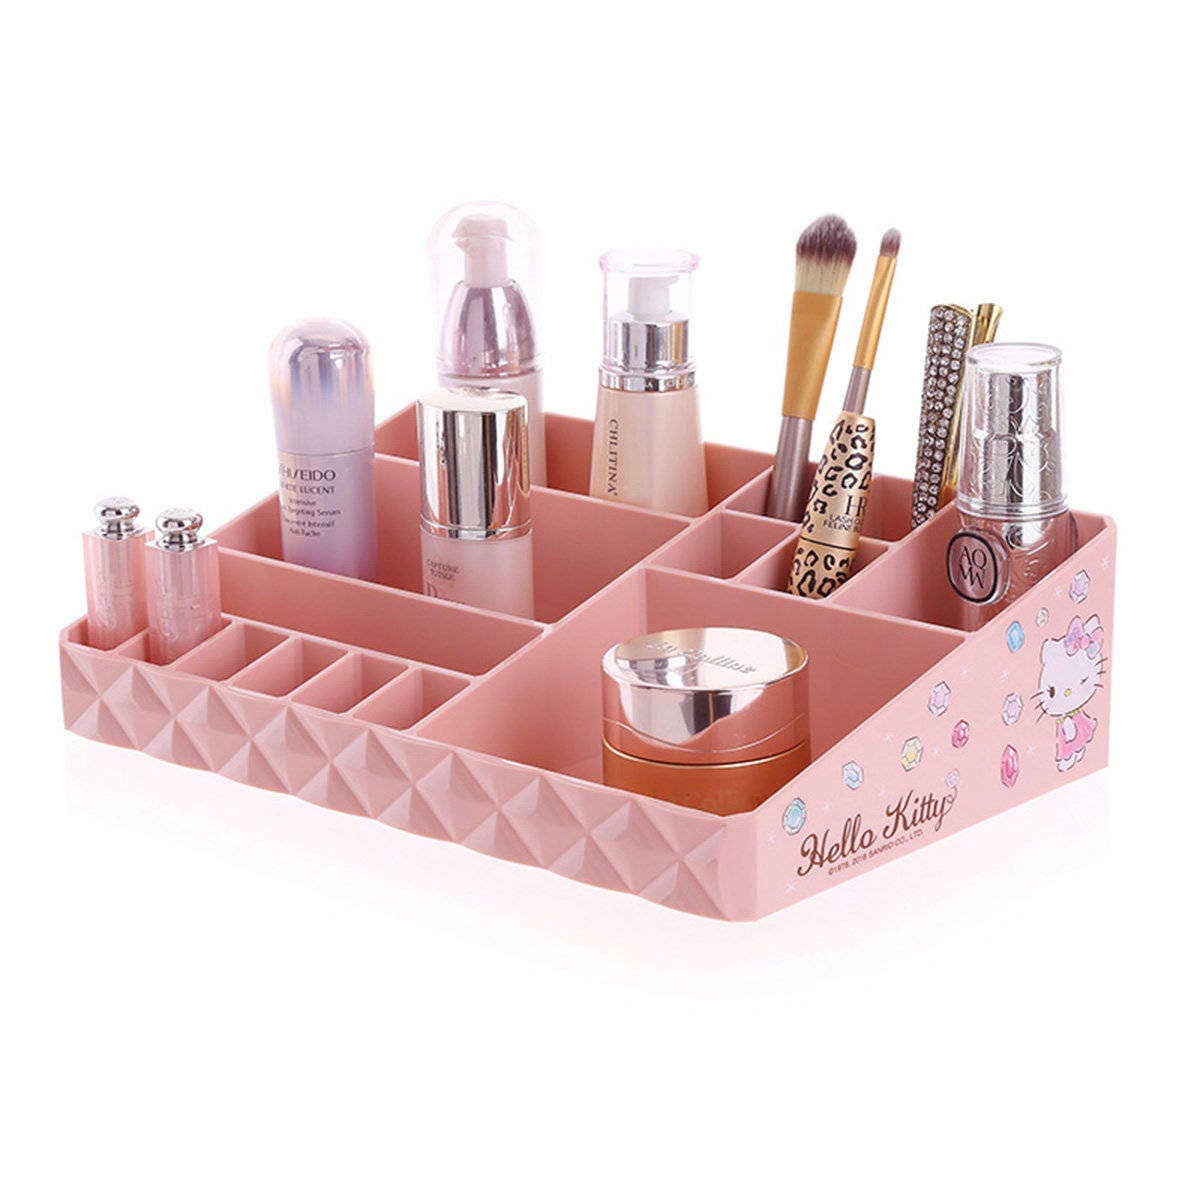 Bonito cajón de maquillaje de escritorio, caja de paleta de cosméticos, soporte para pintalabios, organizador de maquillaje dividido de plástico